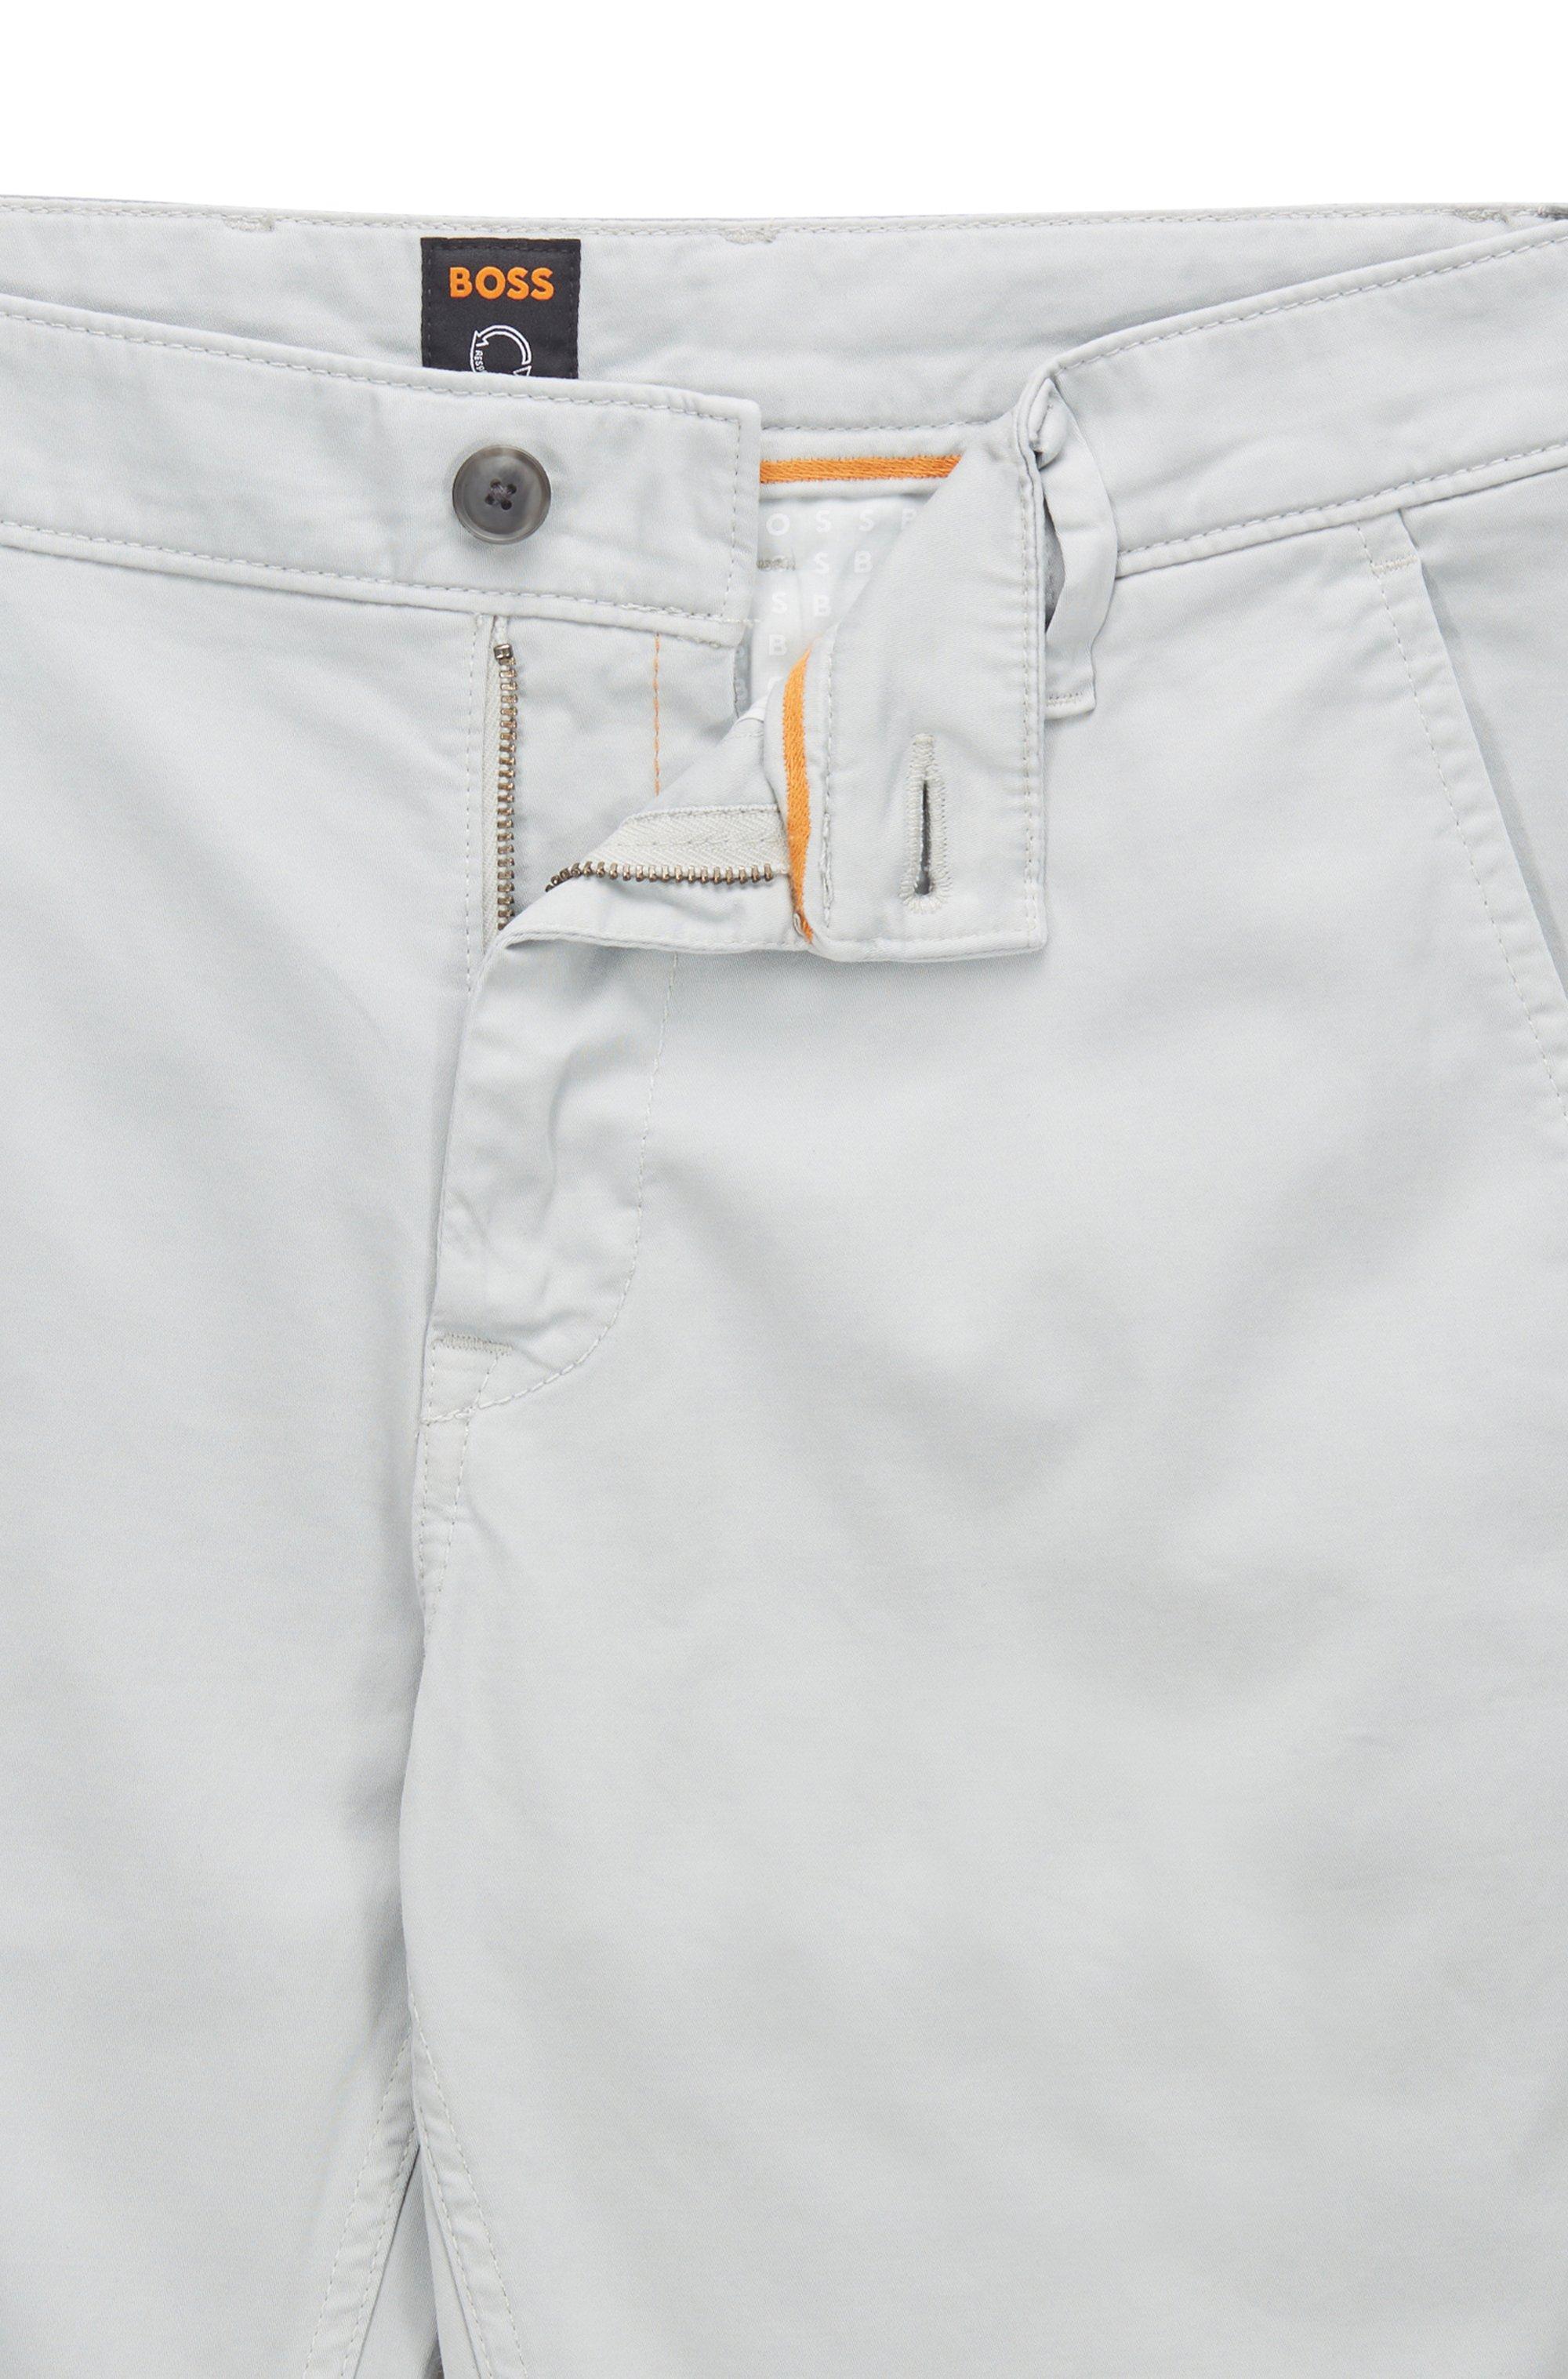 HUGO BOSS Pantalone slim fit cotone elasticizzato Colore Marrone 50379152 